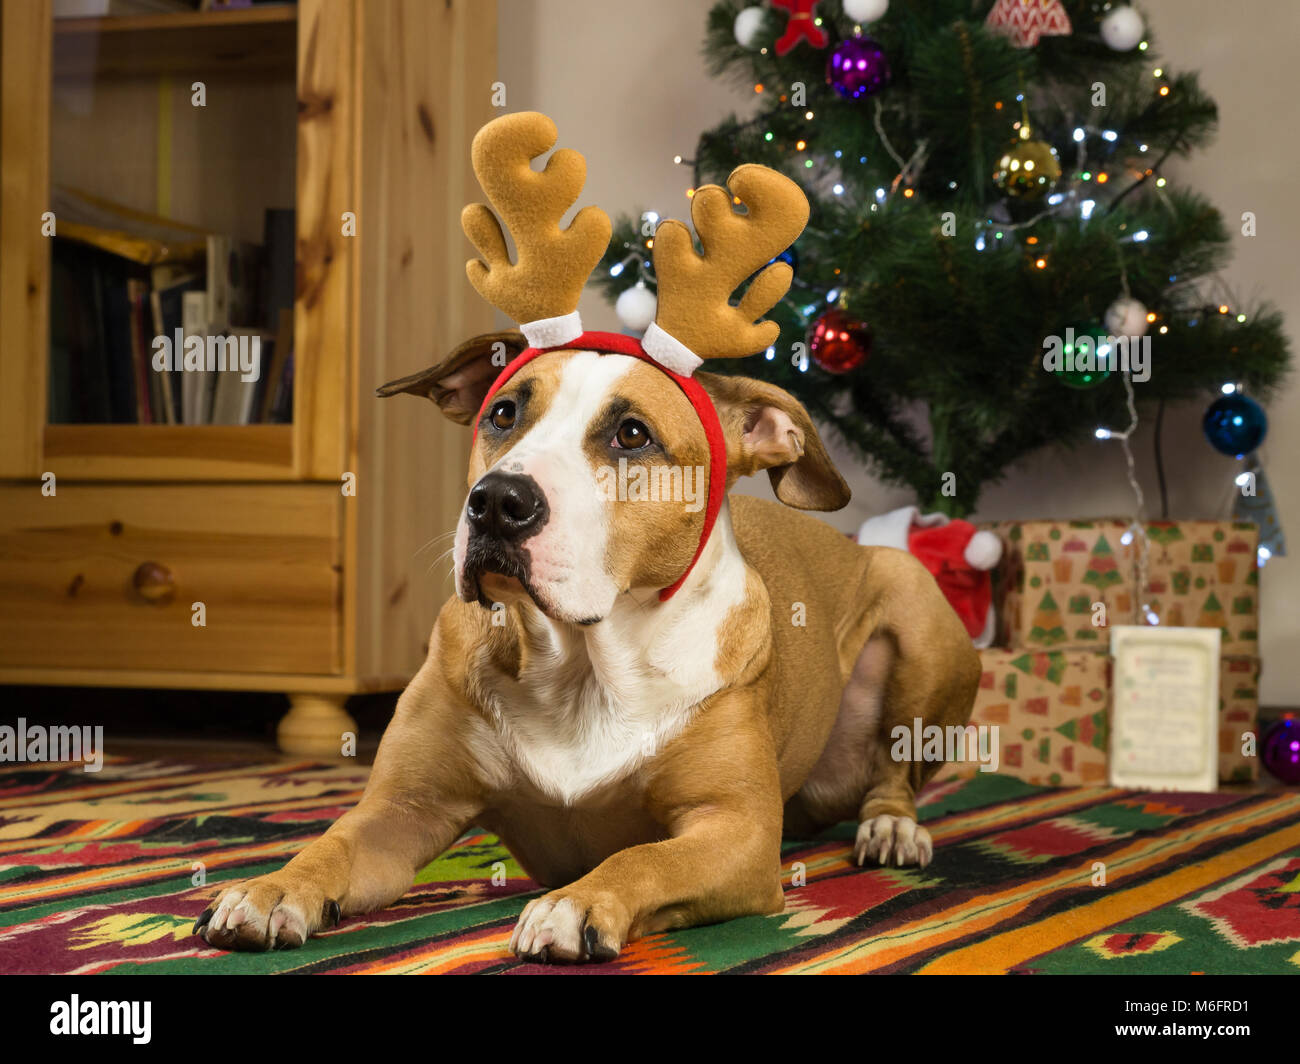 Staffordshire Terrier Hund mit Rentier Hörner ruht auf dem Teppich im Wohnzimmer neben geschmückten Weihnachtsbaum und verpackte Geschenke und Grußkarten Stockfoto